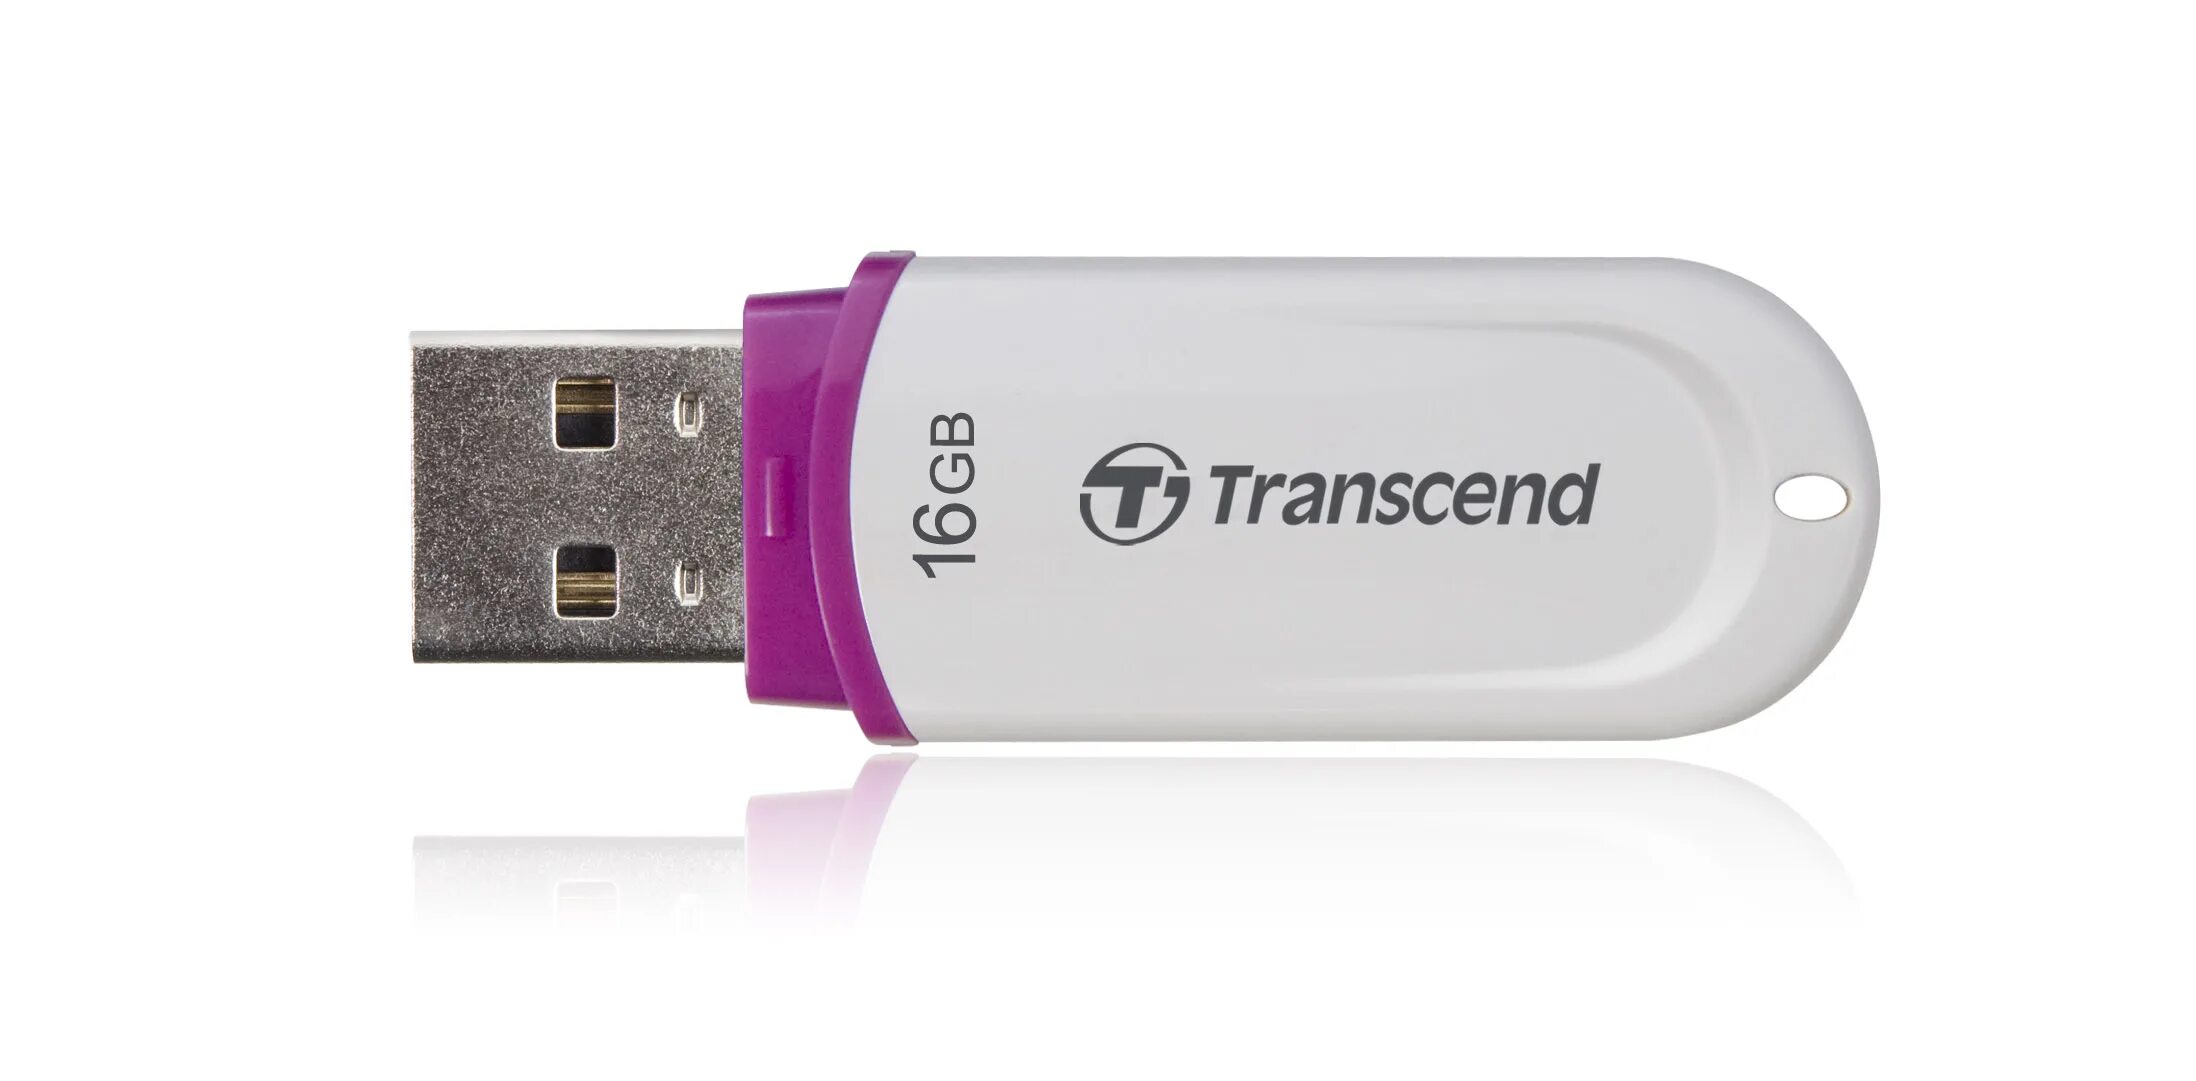 Usb 8gb. Флешка Transcend 8 GB. Transcend JETFLASH 330 8gb. USB Stick 16 GB Transcend. Transcend JETFLASH 16gb USB 2.0.